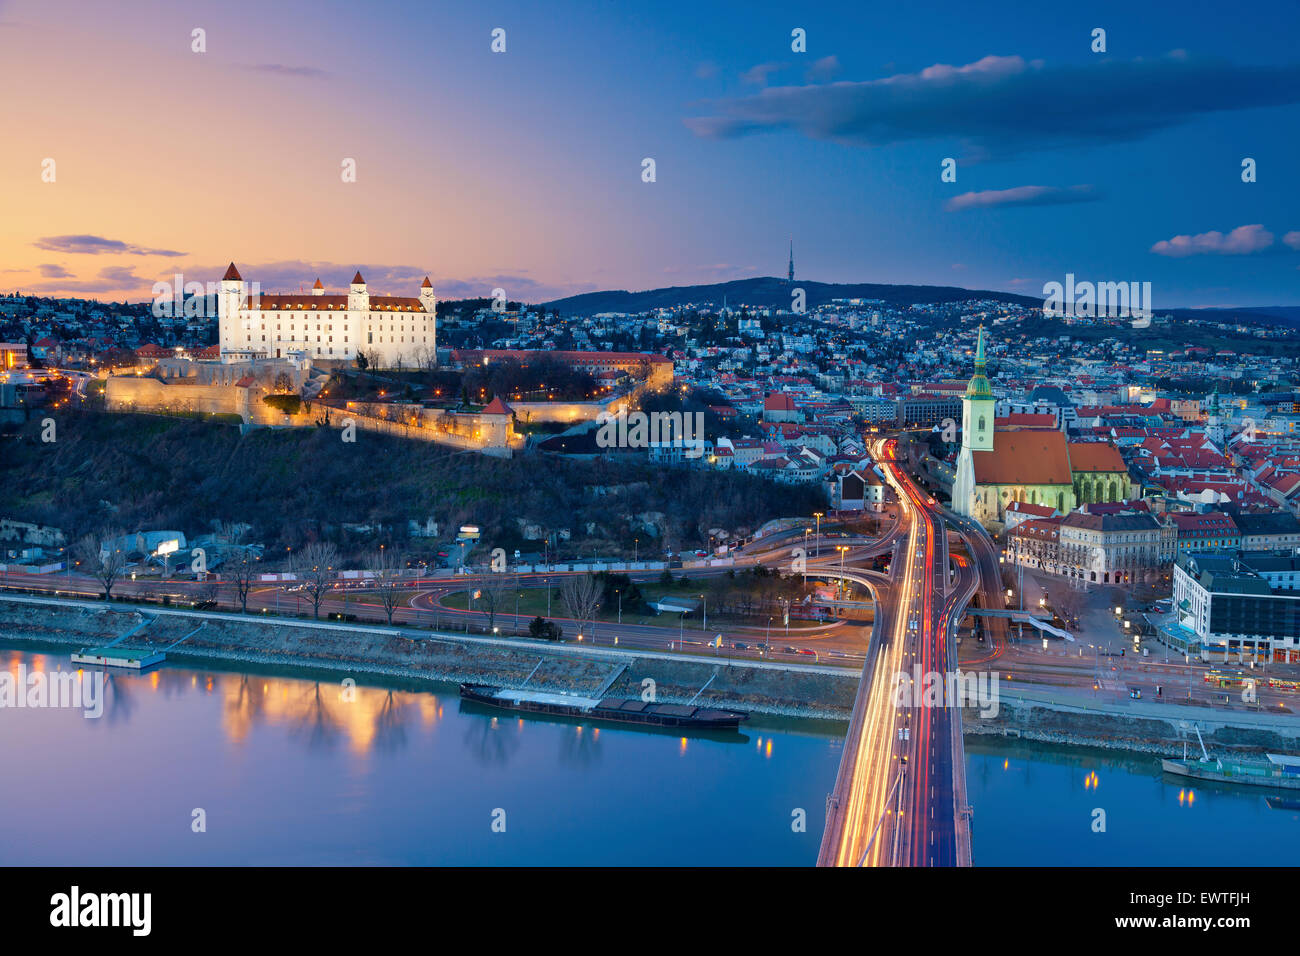 Bratislava, Slowakei. Bild von Bratislava, der Hauptstadt der Slowakei während des Sonnenuntergangs. Stockfoto